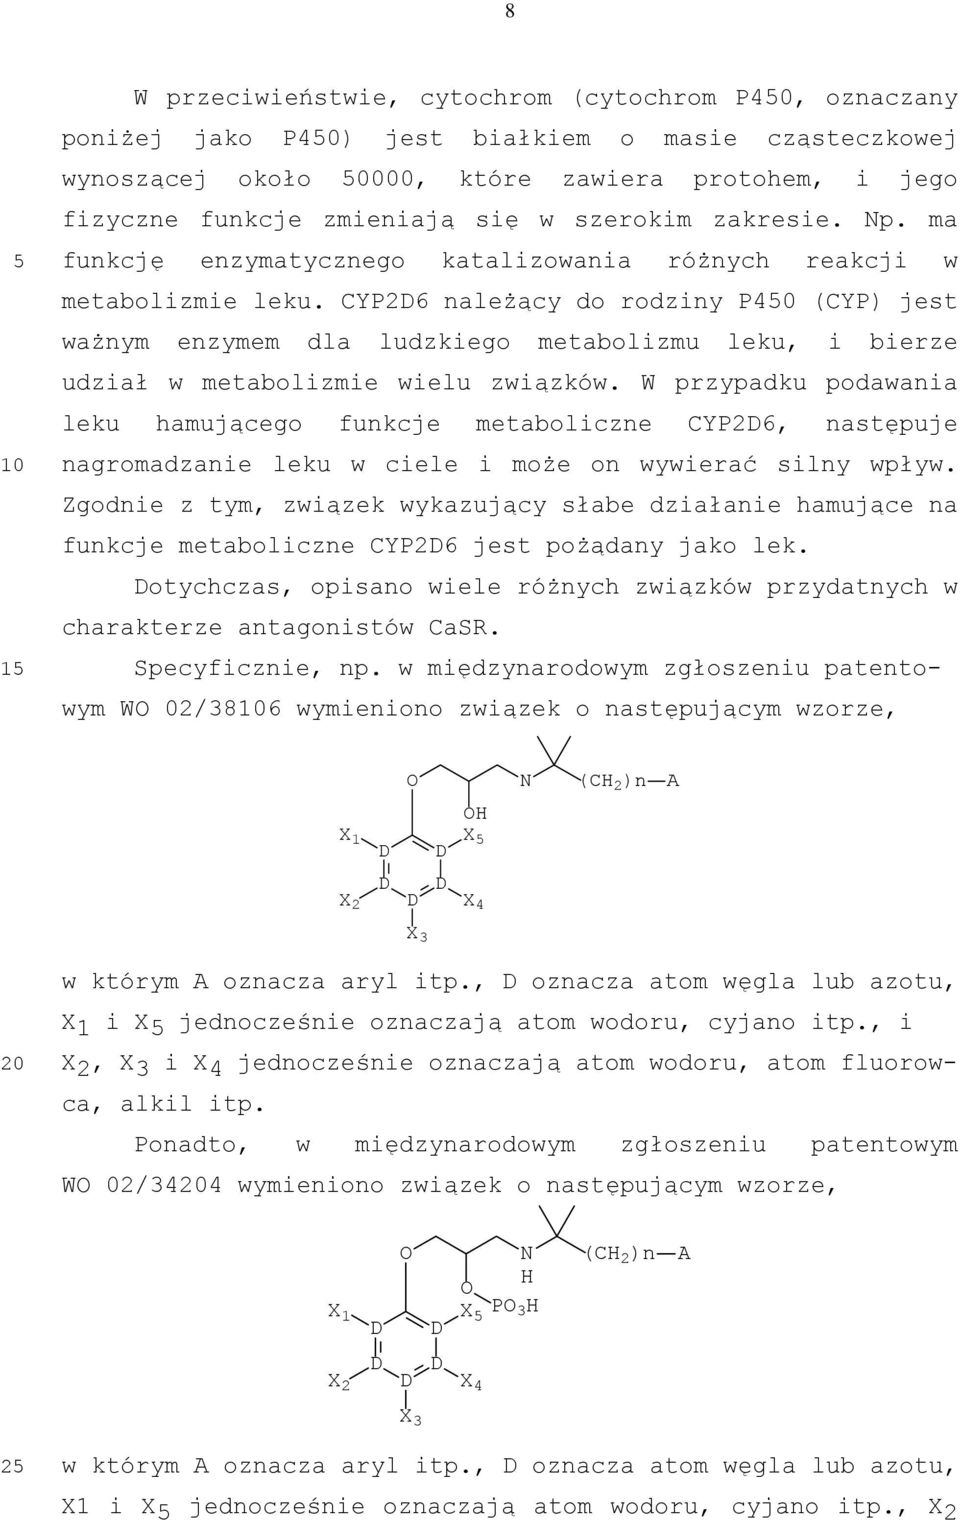 CYP2D6 należący do rodziny P40 (CYP) jest ważnym enzymem dla ludzkiego metabolizmu leku, i bierze udział w metabolizmie wielu związków.